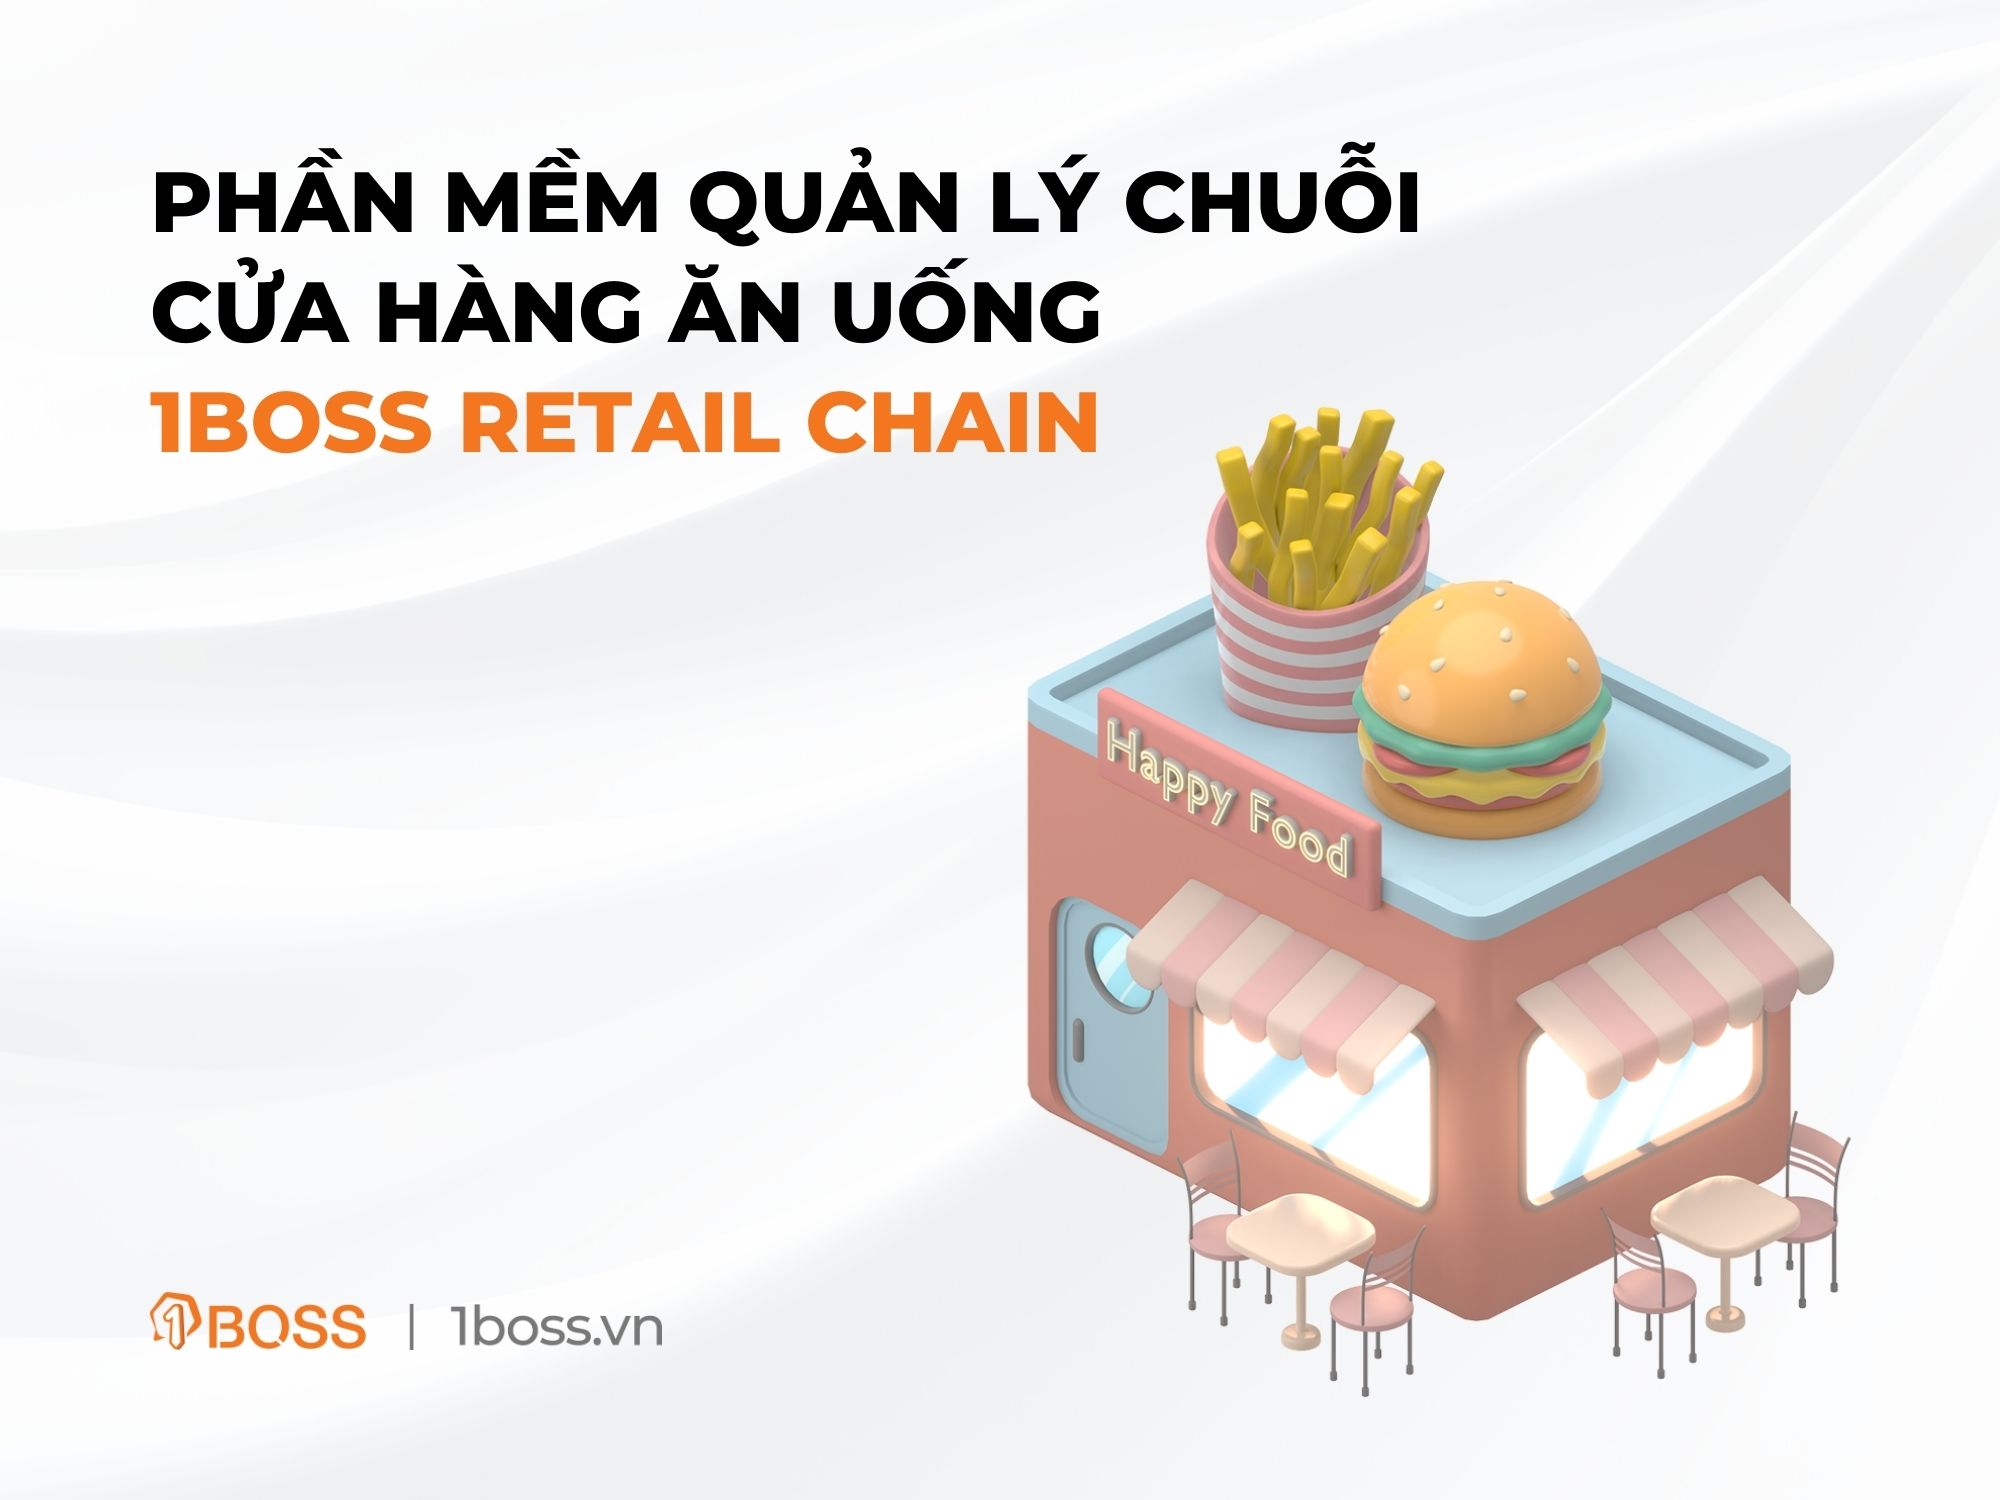 Phần mềm quản lý chuỗi cửa hàng ăn uống | 1BOSS Retail Chain